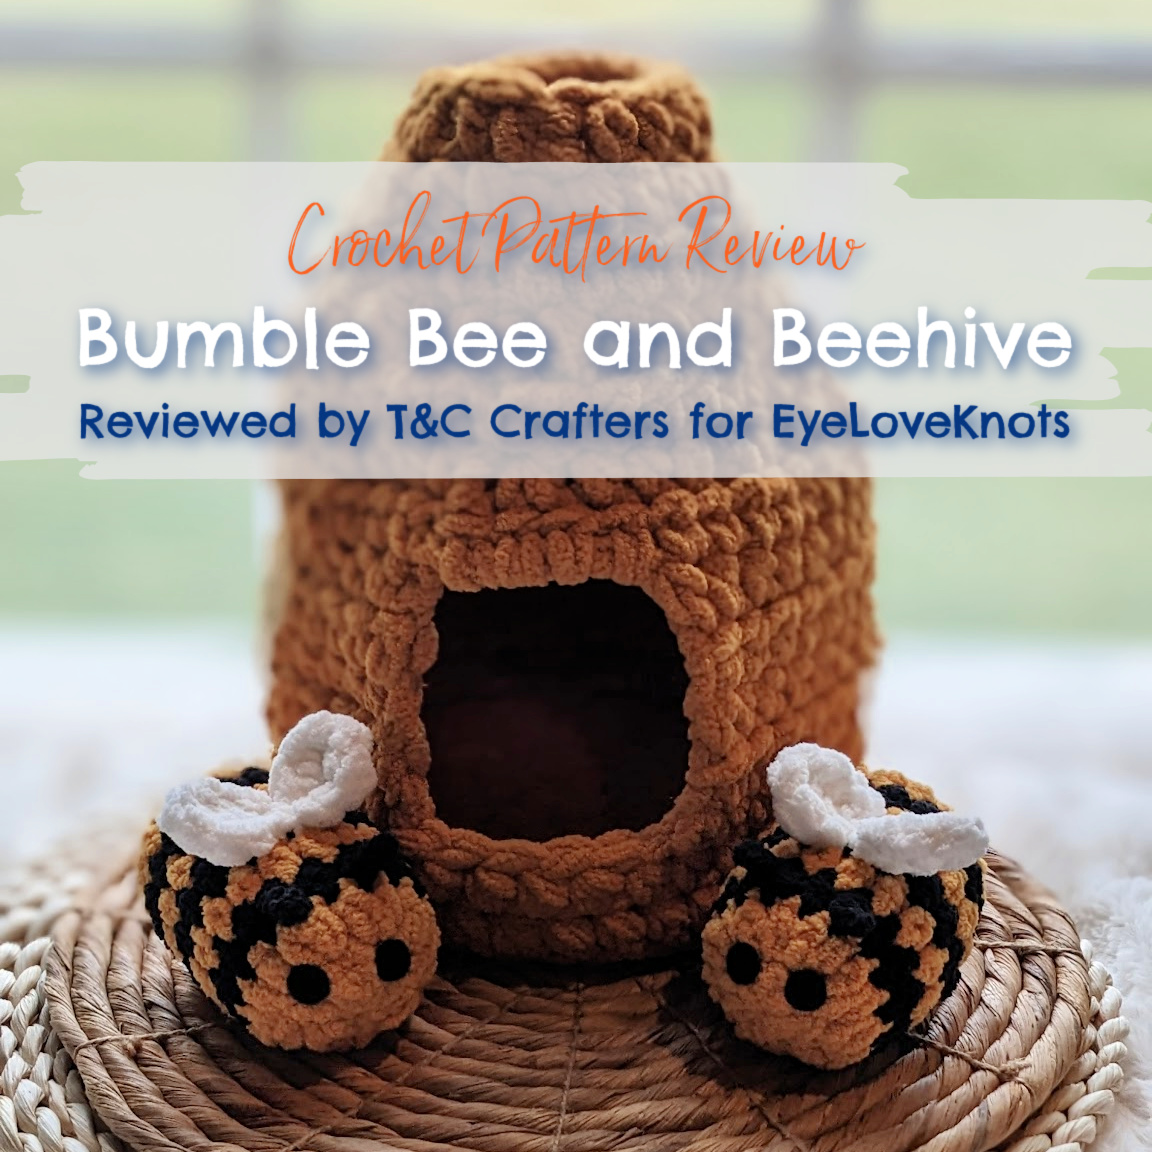 Sweet and Simple Crochet Basket - Free Pattern - Sweet Bee Crochet